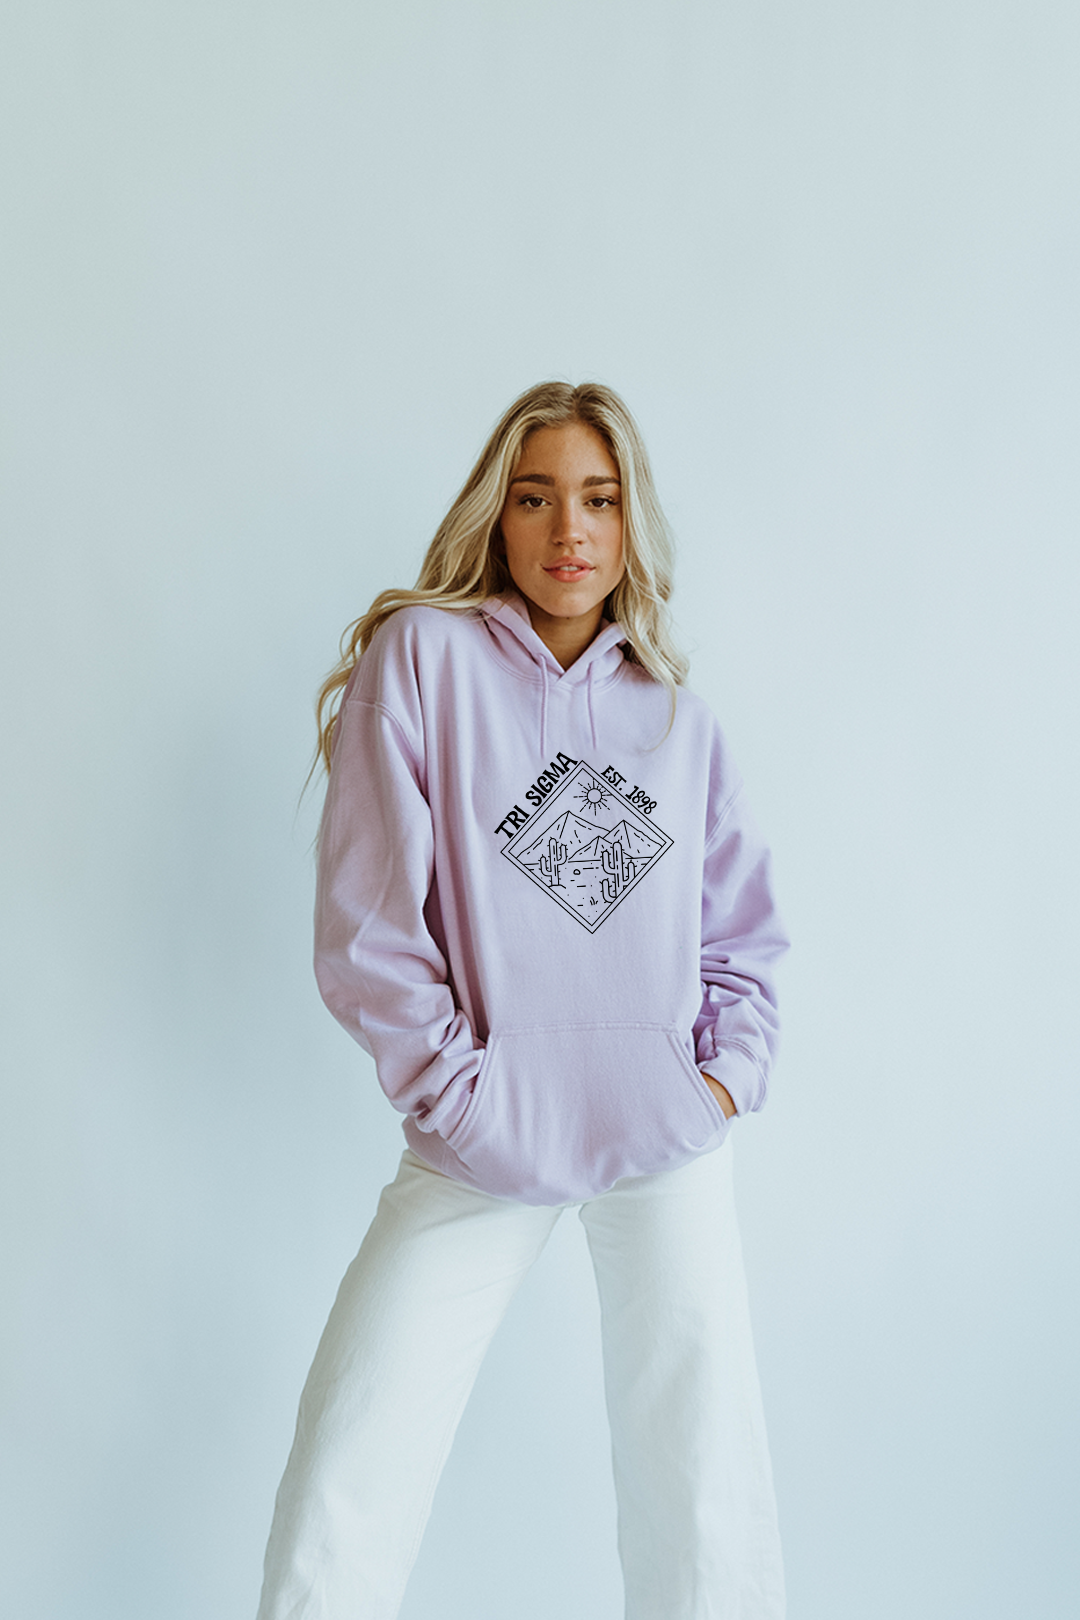 Lavender hoodie - Tri Sigma